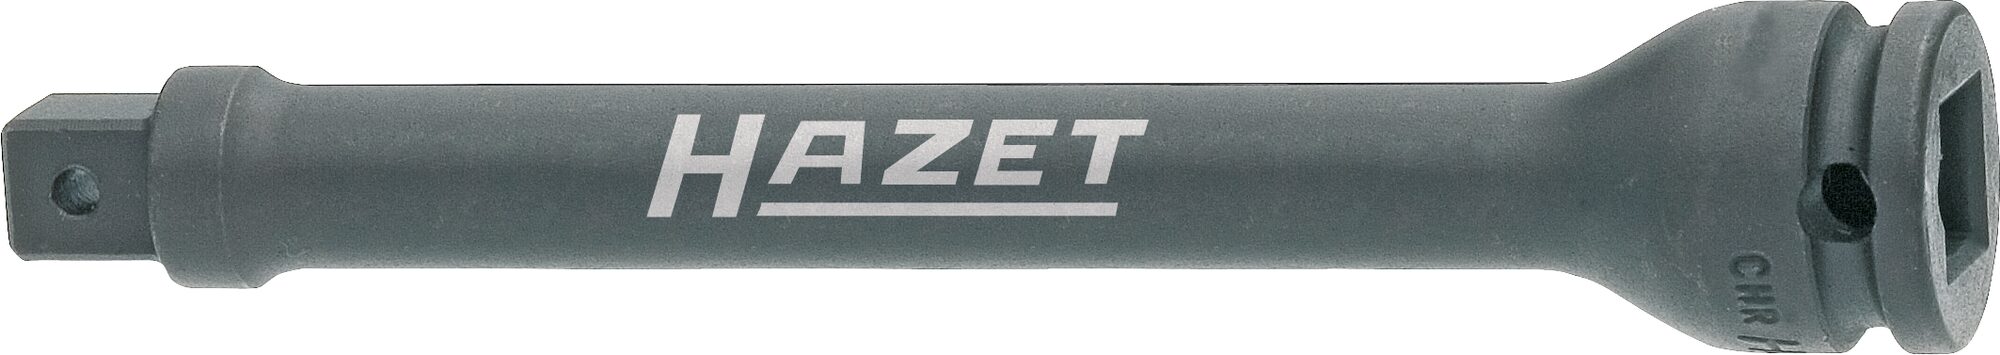 HAZET Schlag-, Maschinenschrauber Verlängerung 8805S-3 · Vierkant hohl 10 mm (3/8 Zoll) · Vierkant massiv 10 mm (3/8 Zoll)